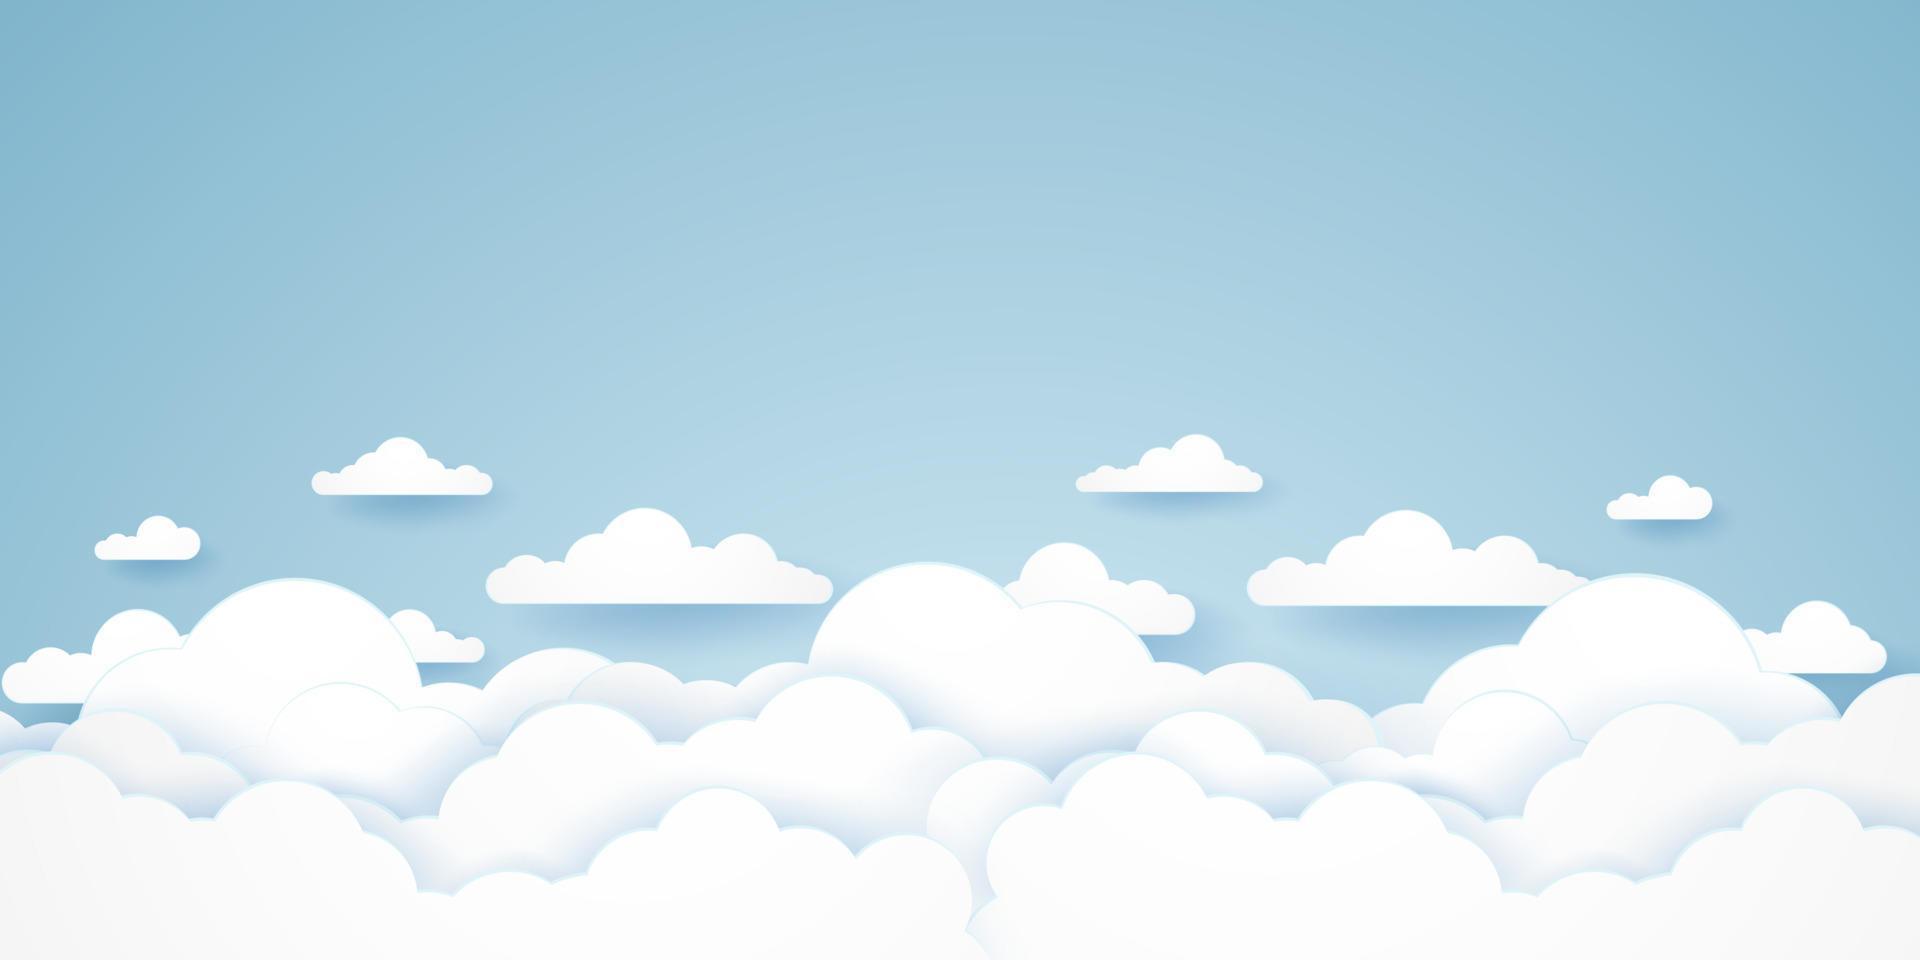 cloudscape, blauwe lucht met wolken, papierkunststijl vector